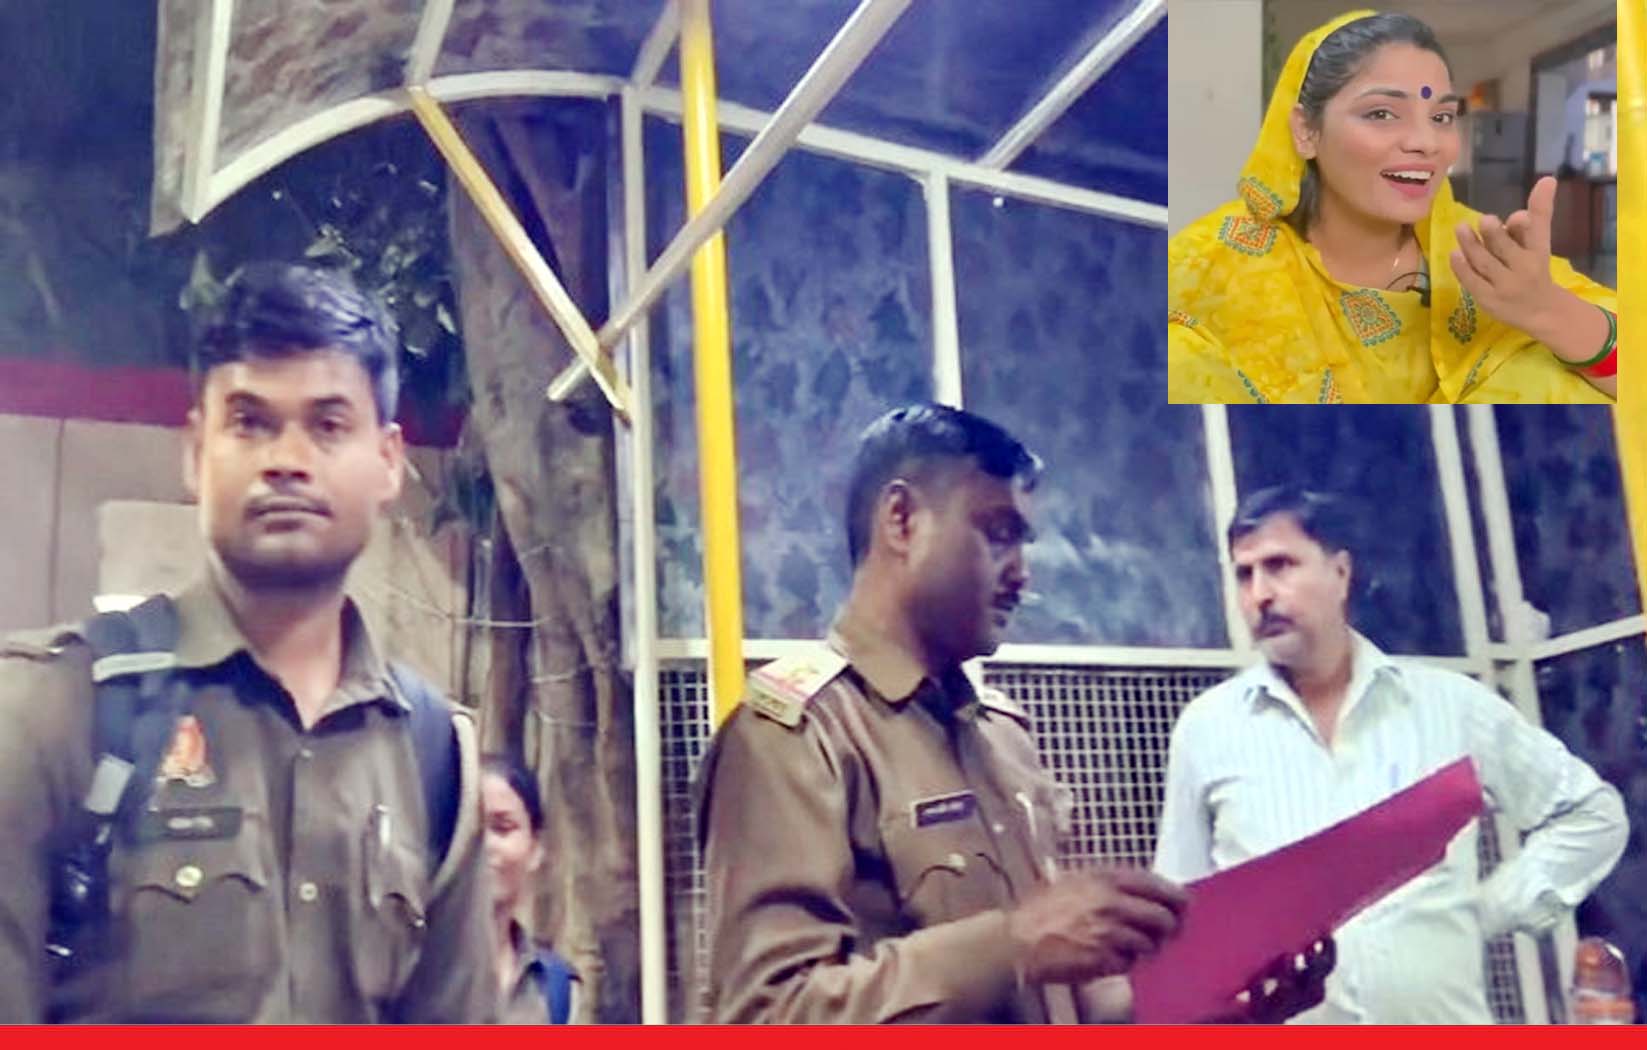 लोक गायिका नेहा सिंह राठौर को पुलिस ने थमाया नोटिस, नफरत फैलाने का आरोप